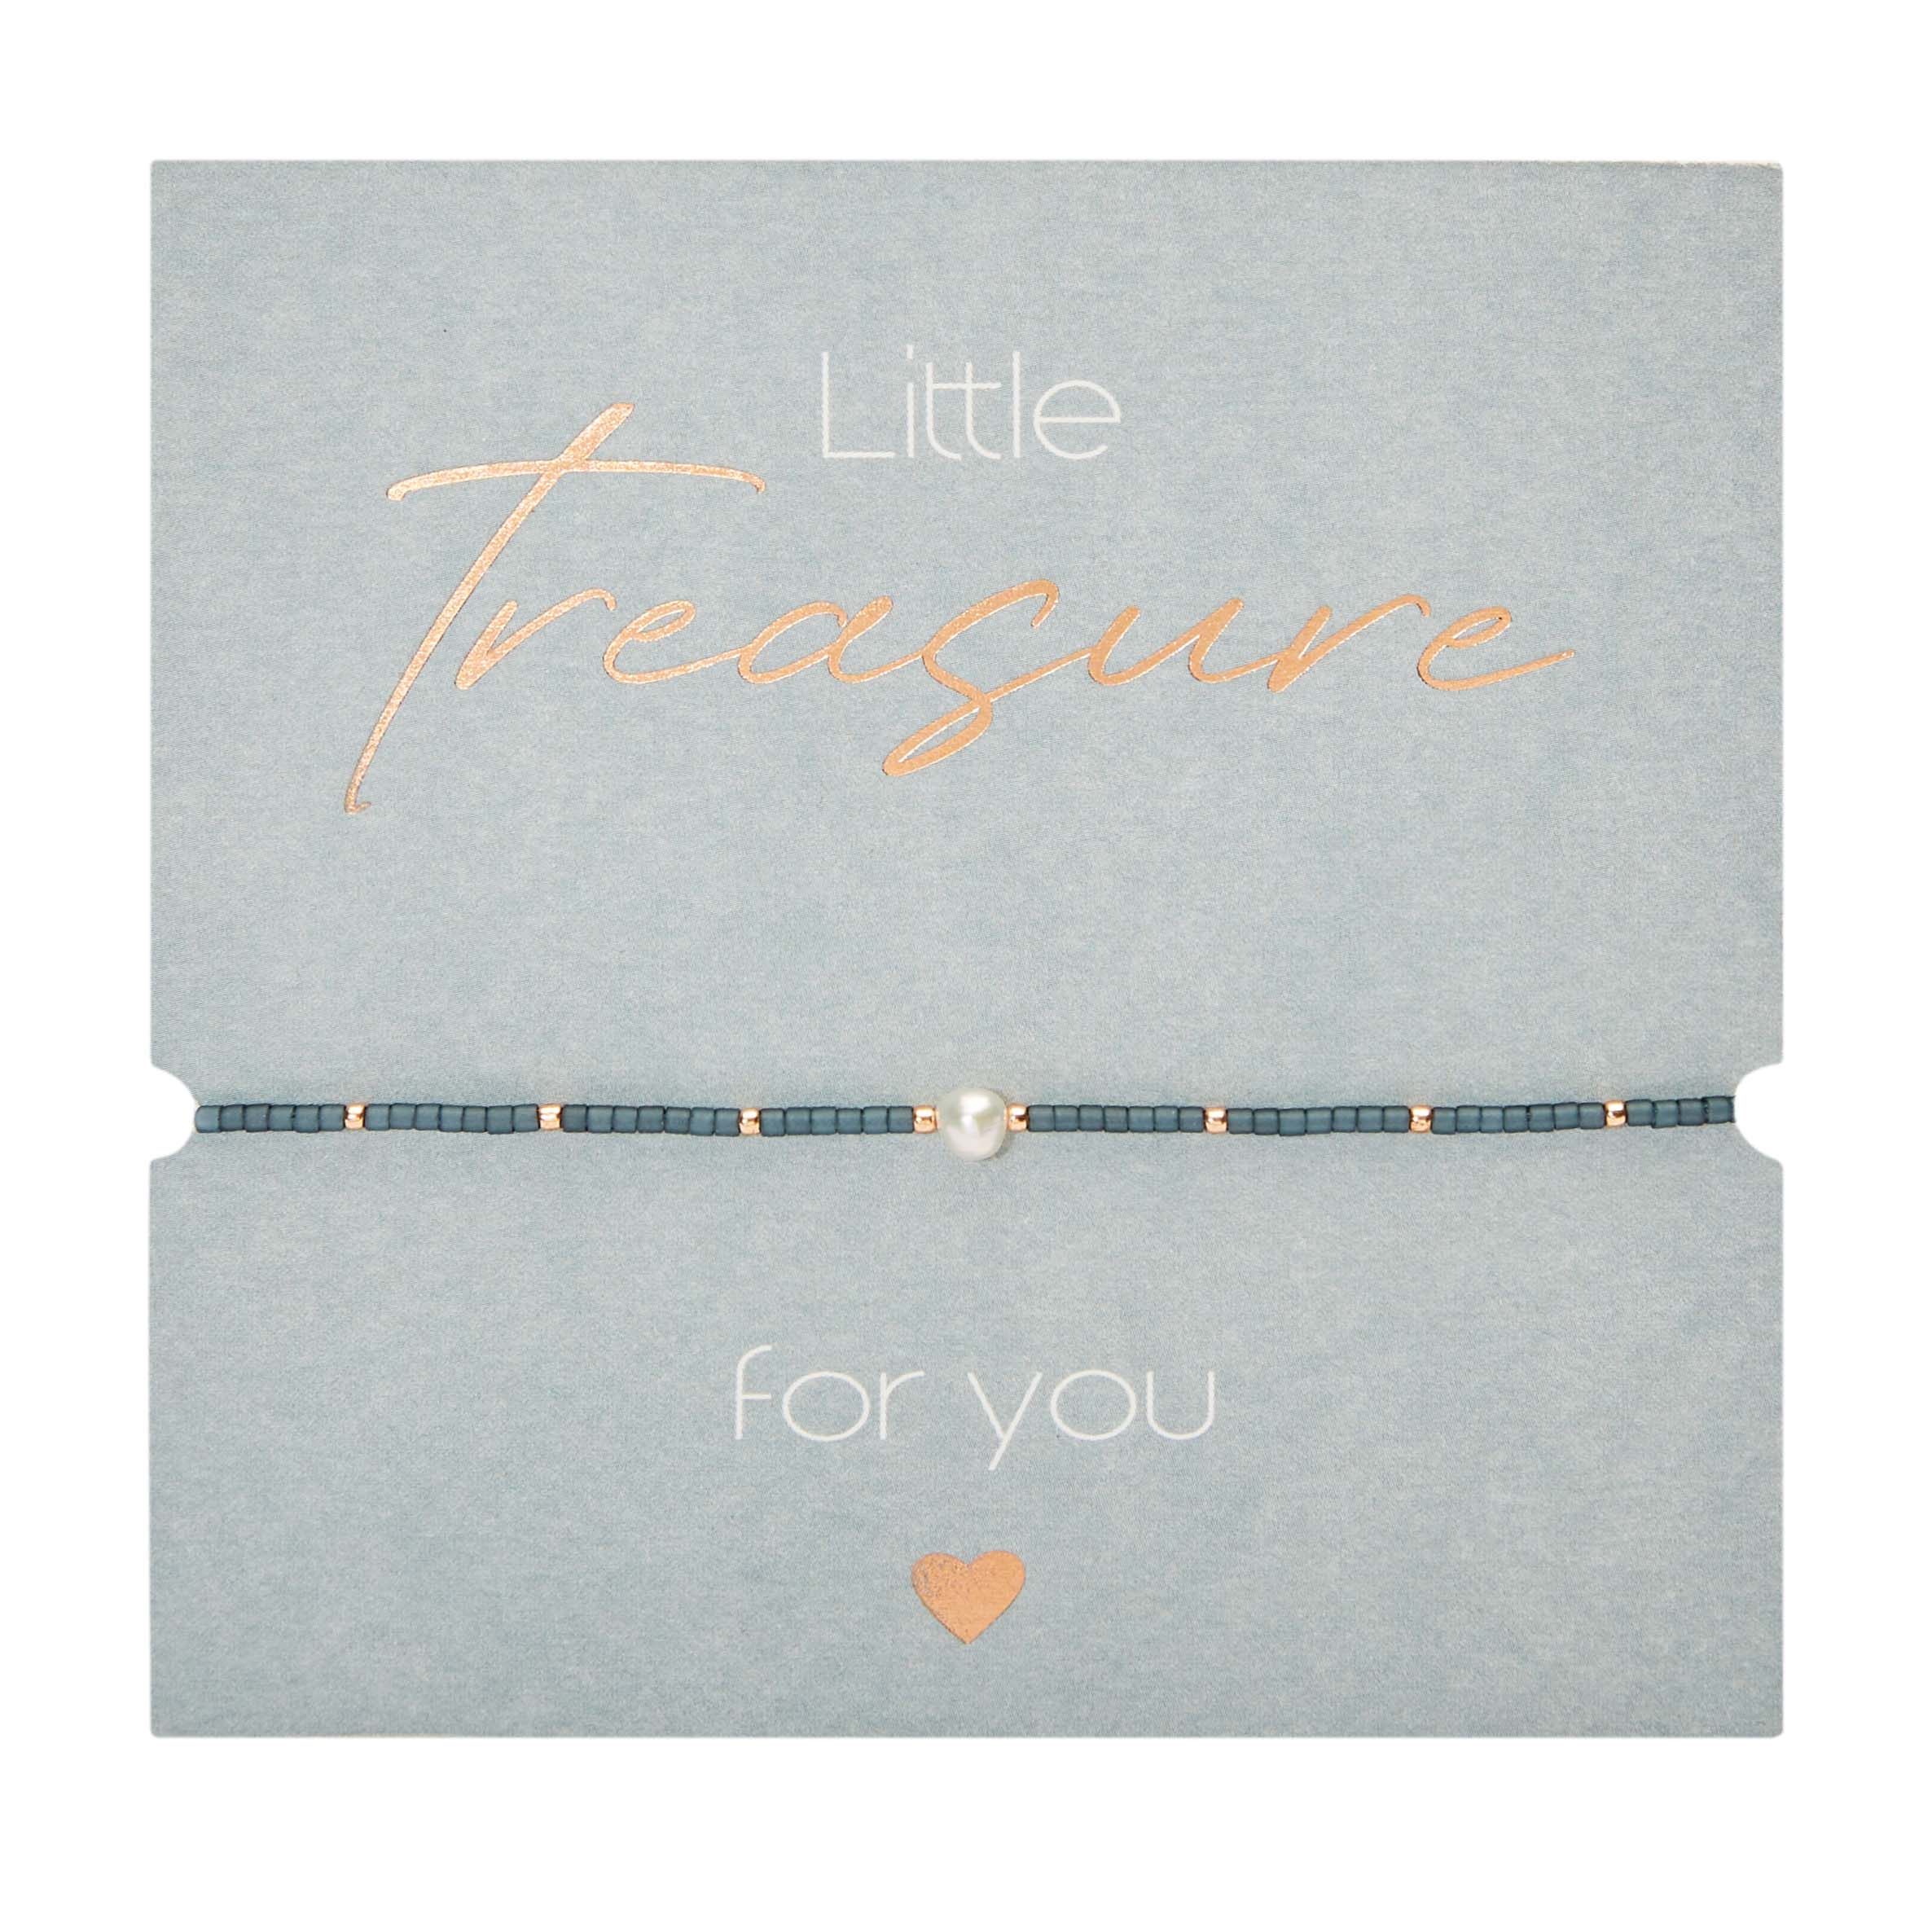 Display bracelets - "Little Treasure" 